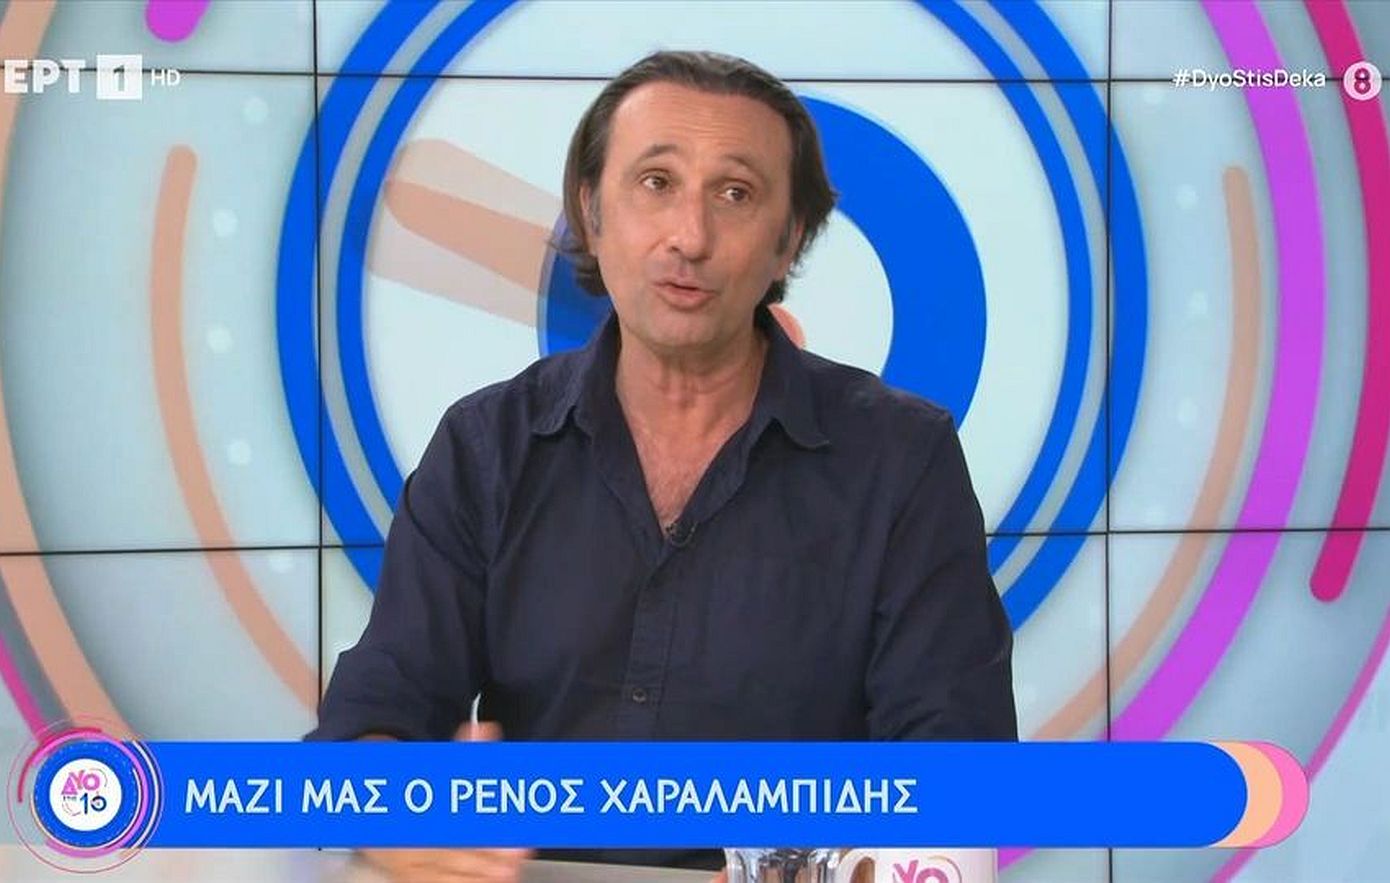 Ρένος Χαραλαμπίδης: «Έλεγαν ότι χαραμίζω το ταλέντο μου σε φτηνή τηλεόραση και κάνω αρπαχτές»